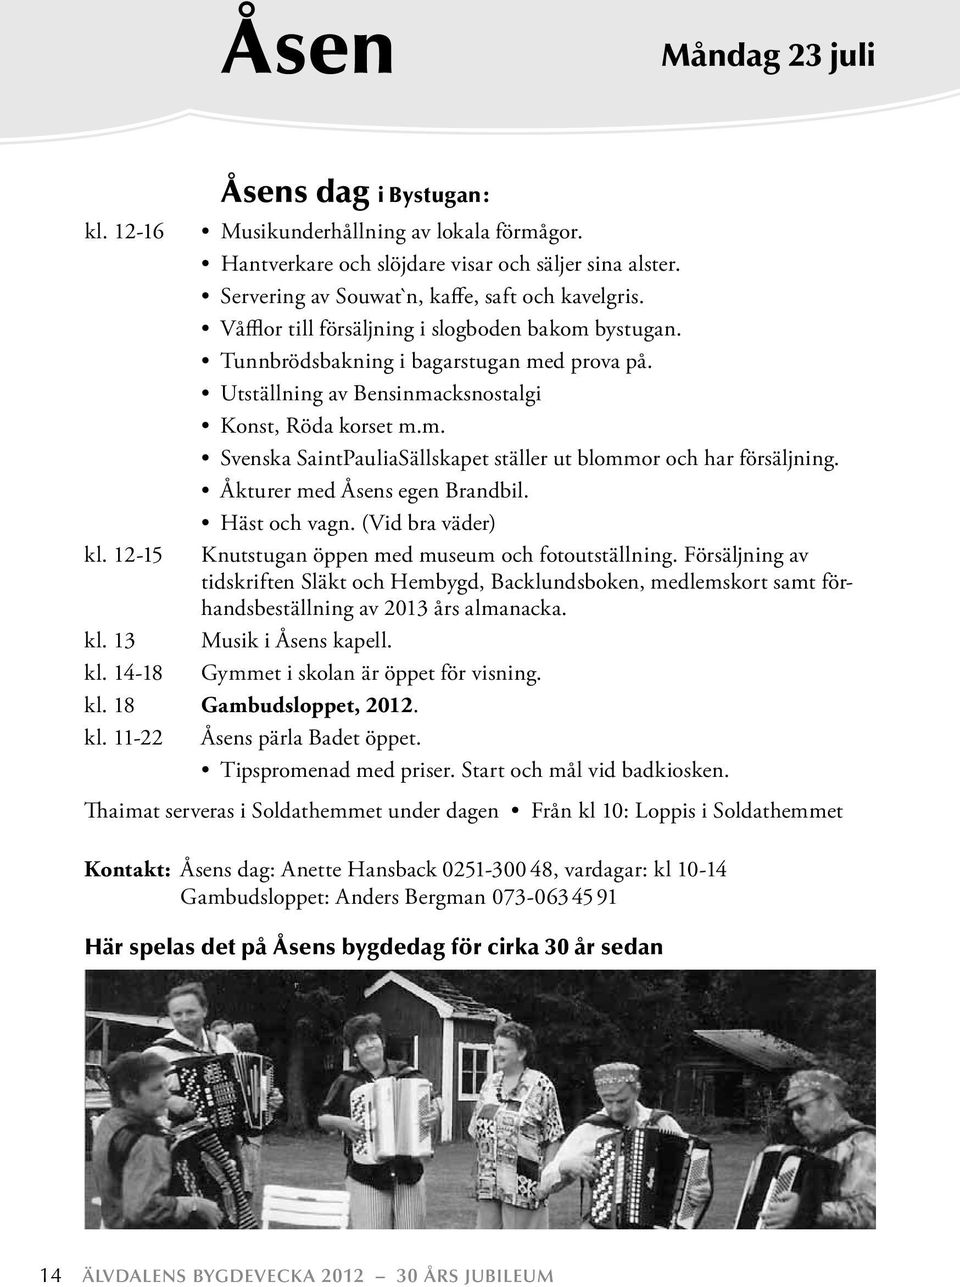 Åkturer med Åsens egen Brandbil. Häst och vagn. (Vid bra väder) kl. 12-15 Knutstugan öppen med museum och fotoutställning.